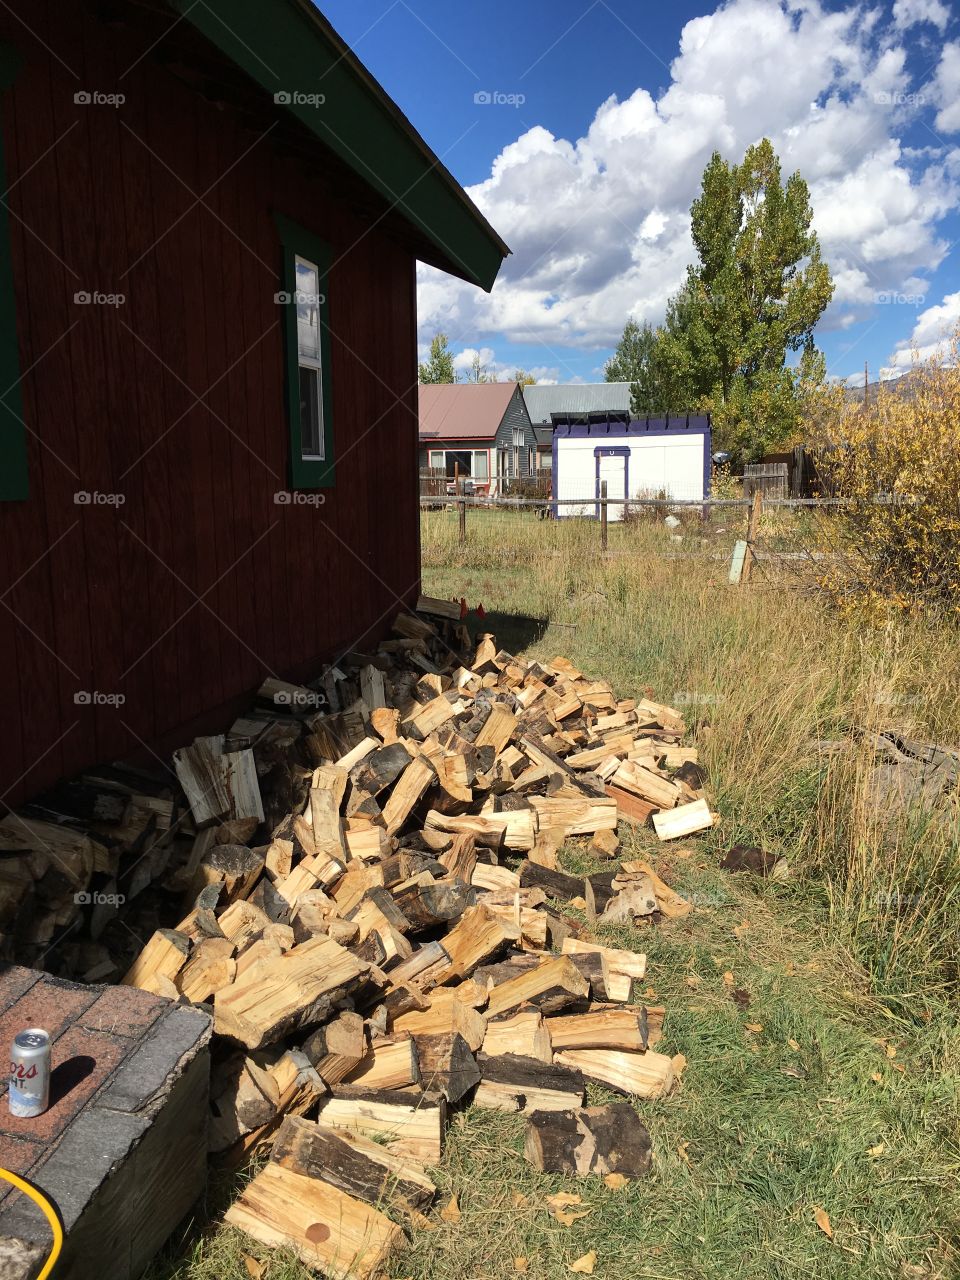 Fallen wood stack